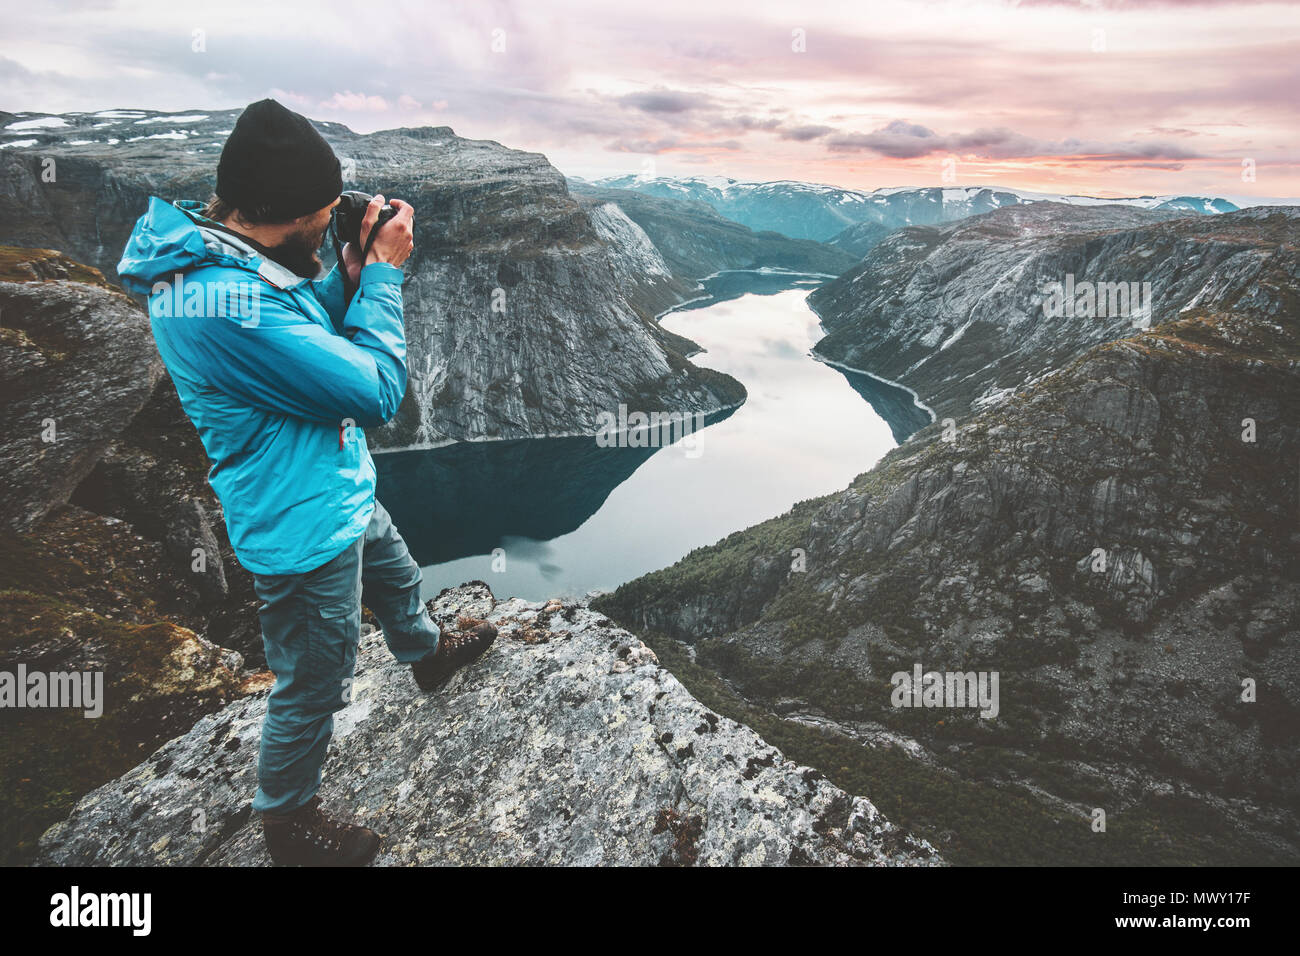 Uomo fotografo di viaggio prendendo foto paesaggio in Norvegia montagne permanente sulla scogliera hobby lifestyle avventura vacanze lago vista aerea Foto Stock